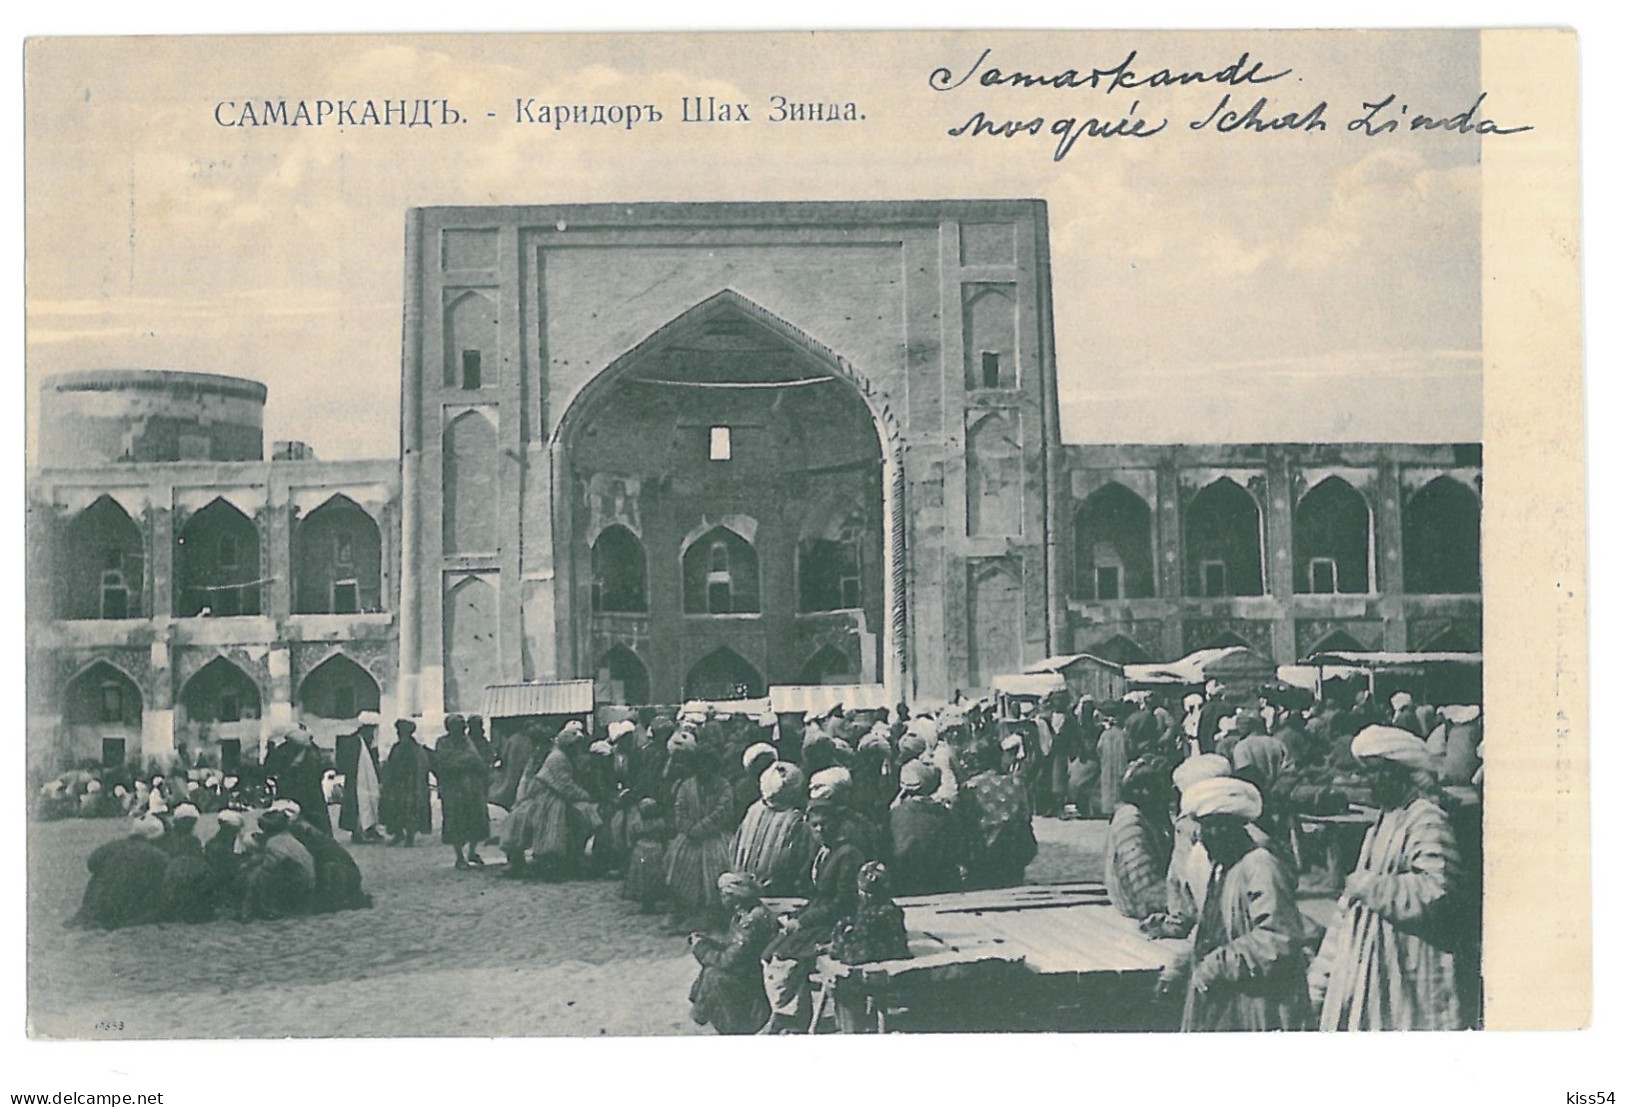 U 24 - 15543 SAMARKAND, Ethnics, Uzbekistan - Old Postcard - Unused - Usbekistan